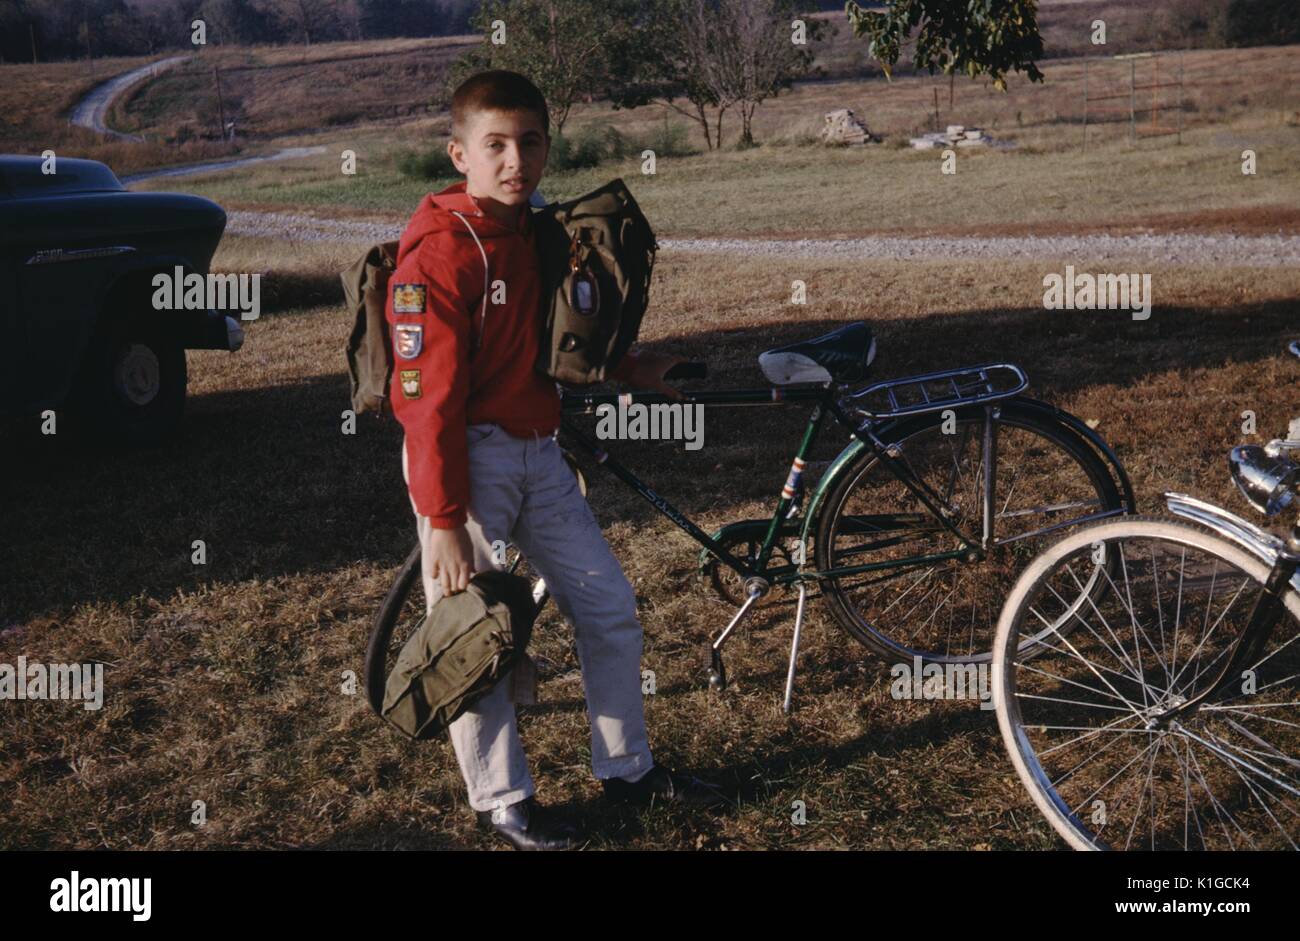 Ein in voller Länge Porträt eines Jungen tragen ein rotes Langarmshirt mit Patches, beladen mit zwei Taschen und stand neben seinem geparkten Fahrrad in eine Rasenfläche neben eine kurvenreiche Straße, 1966. Stockfoto